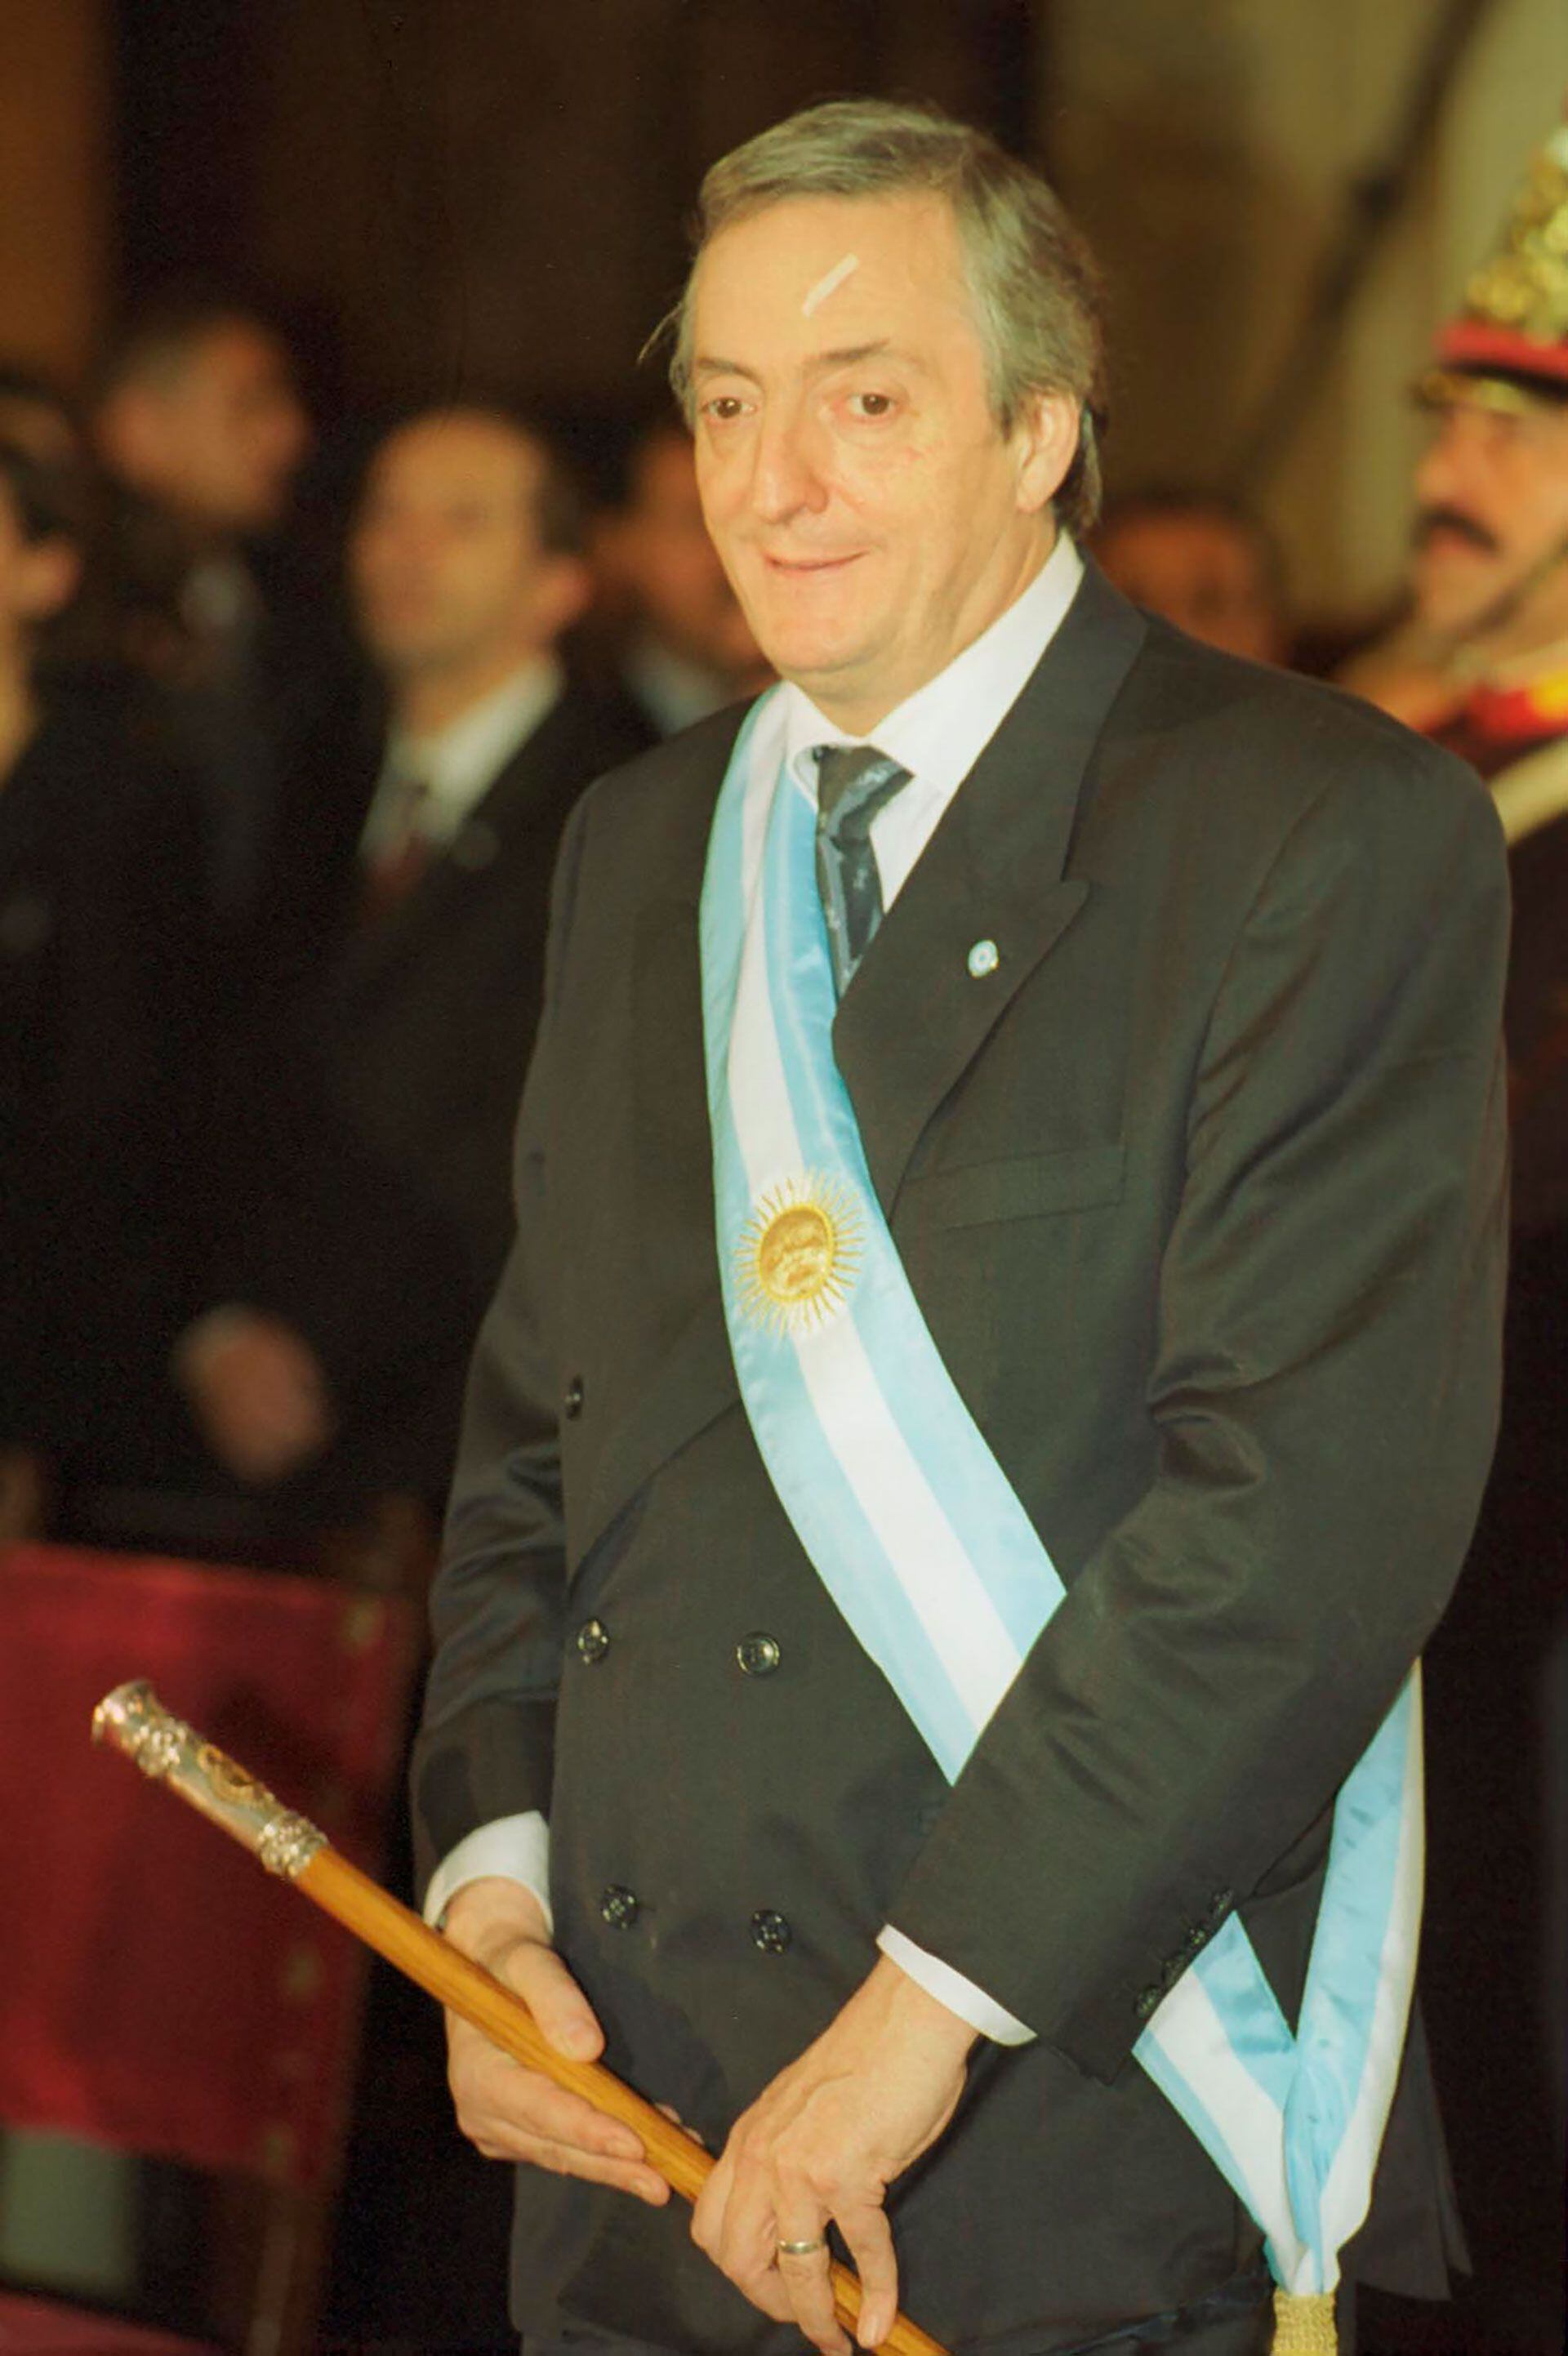 El presidente Néstor Kirchner durante el Tedeum realizado la noche del 25 de mayo de 2003 en la Catedral Metropolitana con un detalle que recuerda el golpe con la cámara de un fotógrafo (NA/Mariano Sánchez)